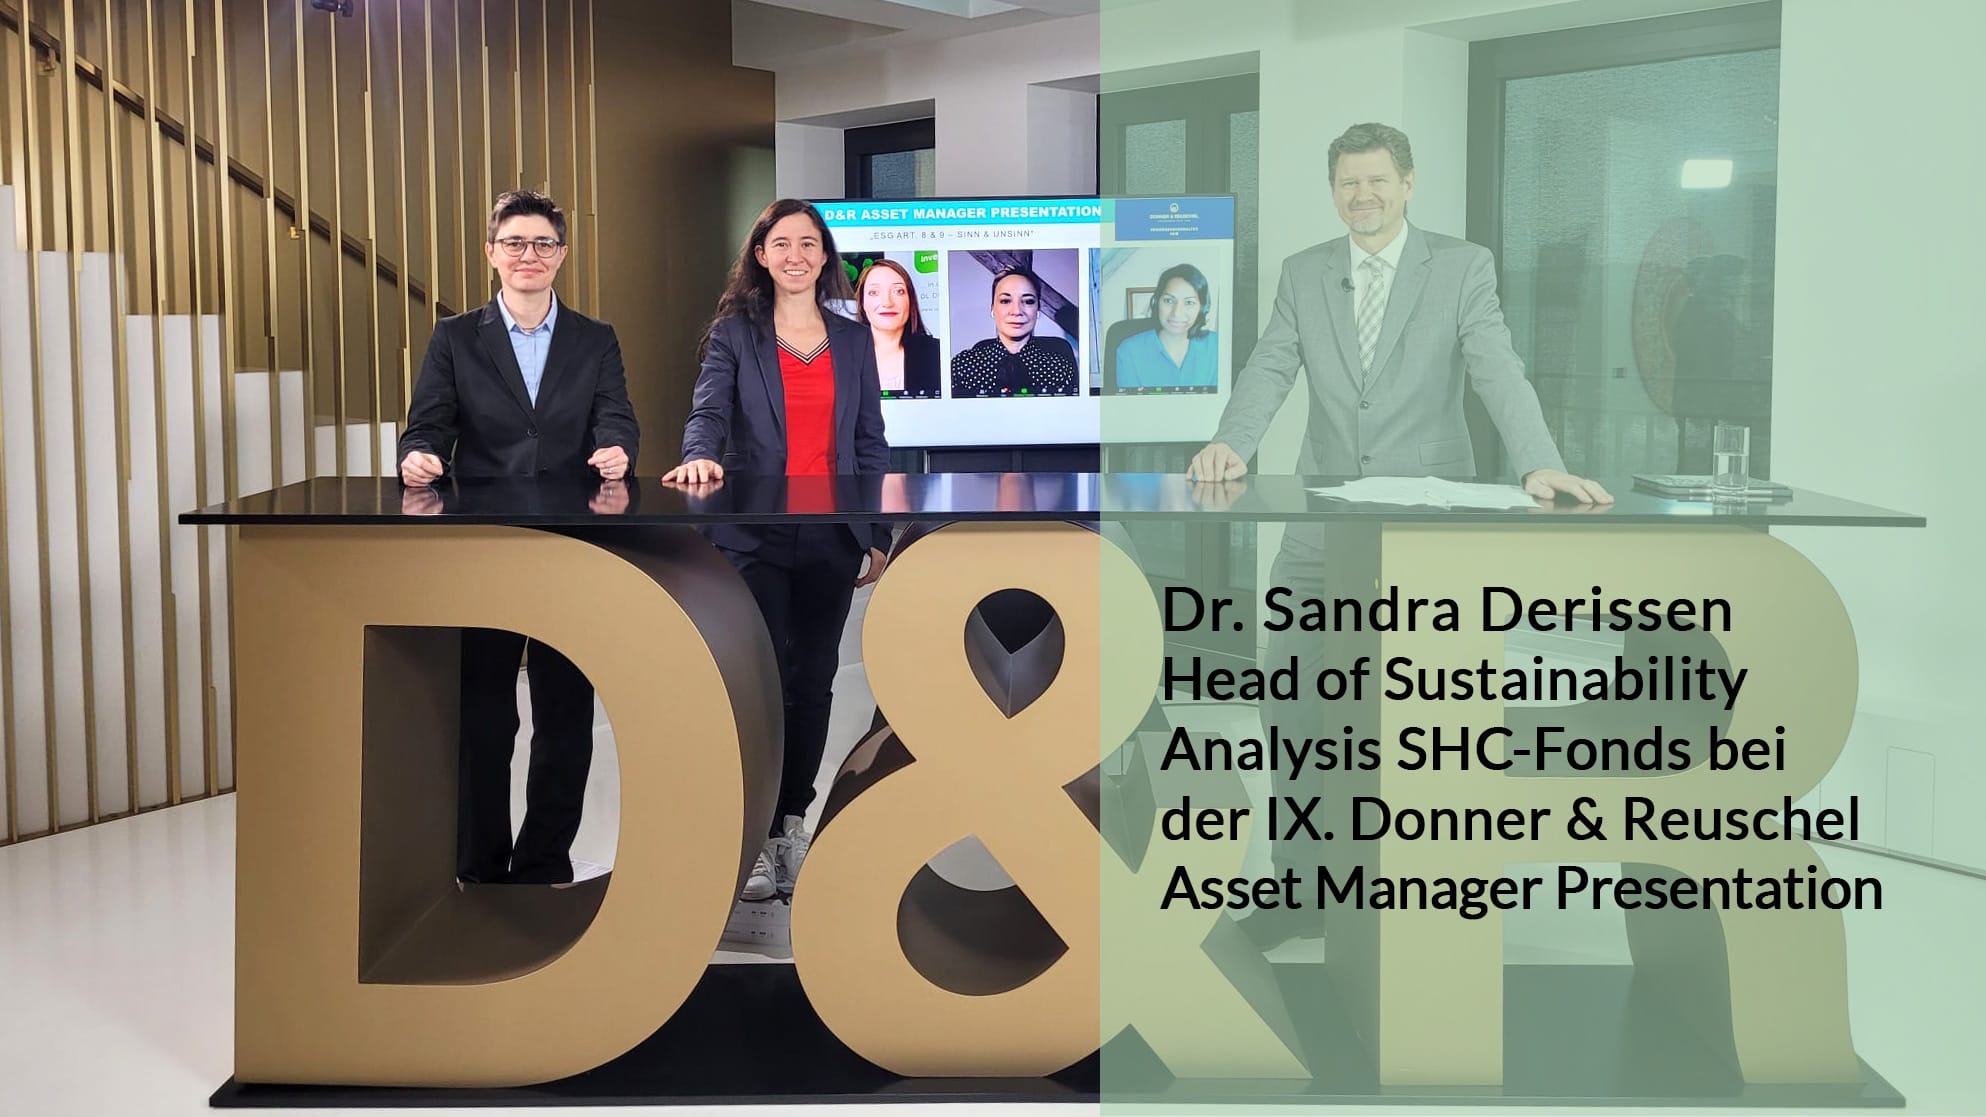 Dr. Sandra im Aufnahmestudio für die IX. Donner & Reuschel Asset Manager Presentation. Links neben ihr Susanne Geber, recht neben ihr Andreas Franik (Moderator)